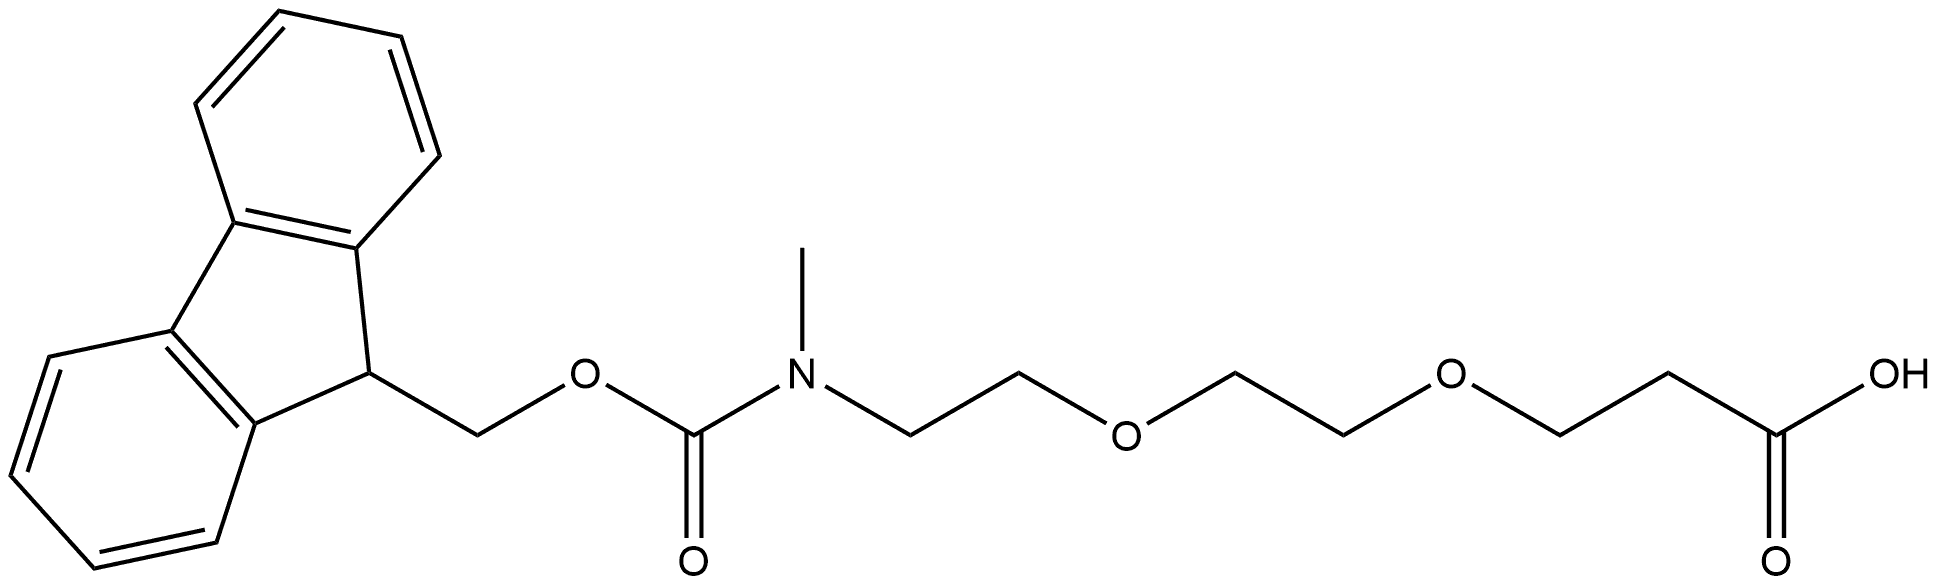 Fmoc-NMe-PEG2-acid Structure